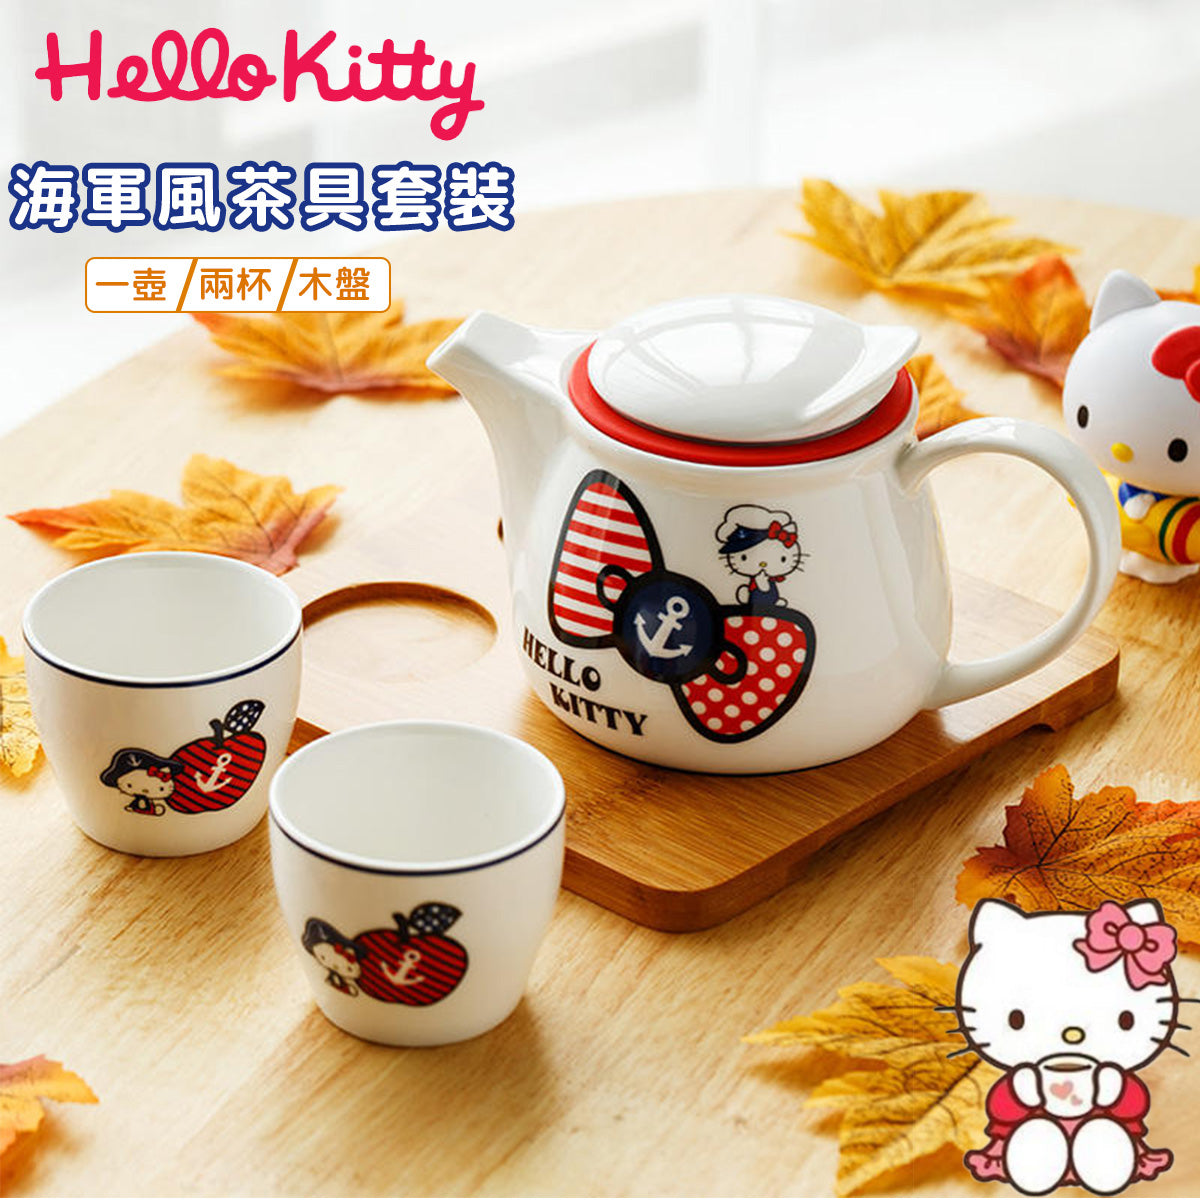 Tea Set - Sanrio Hello Kitty Bow